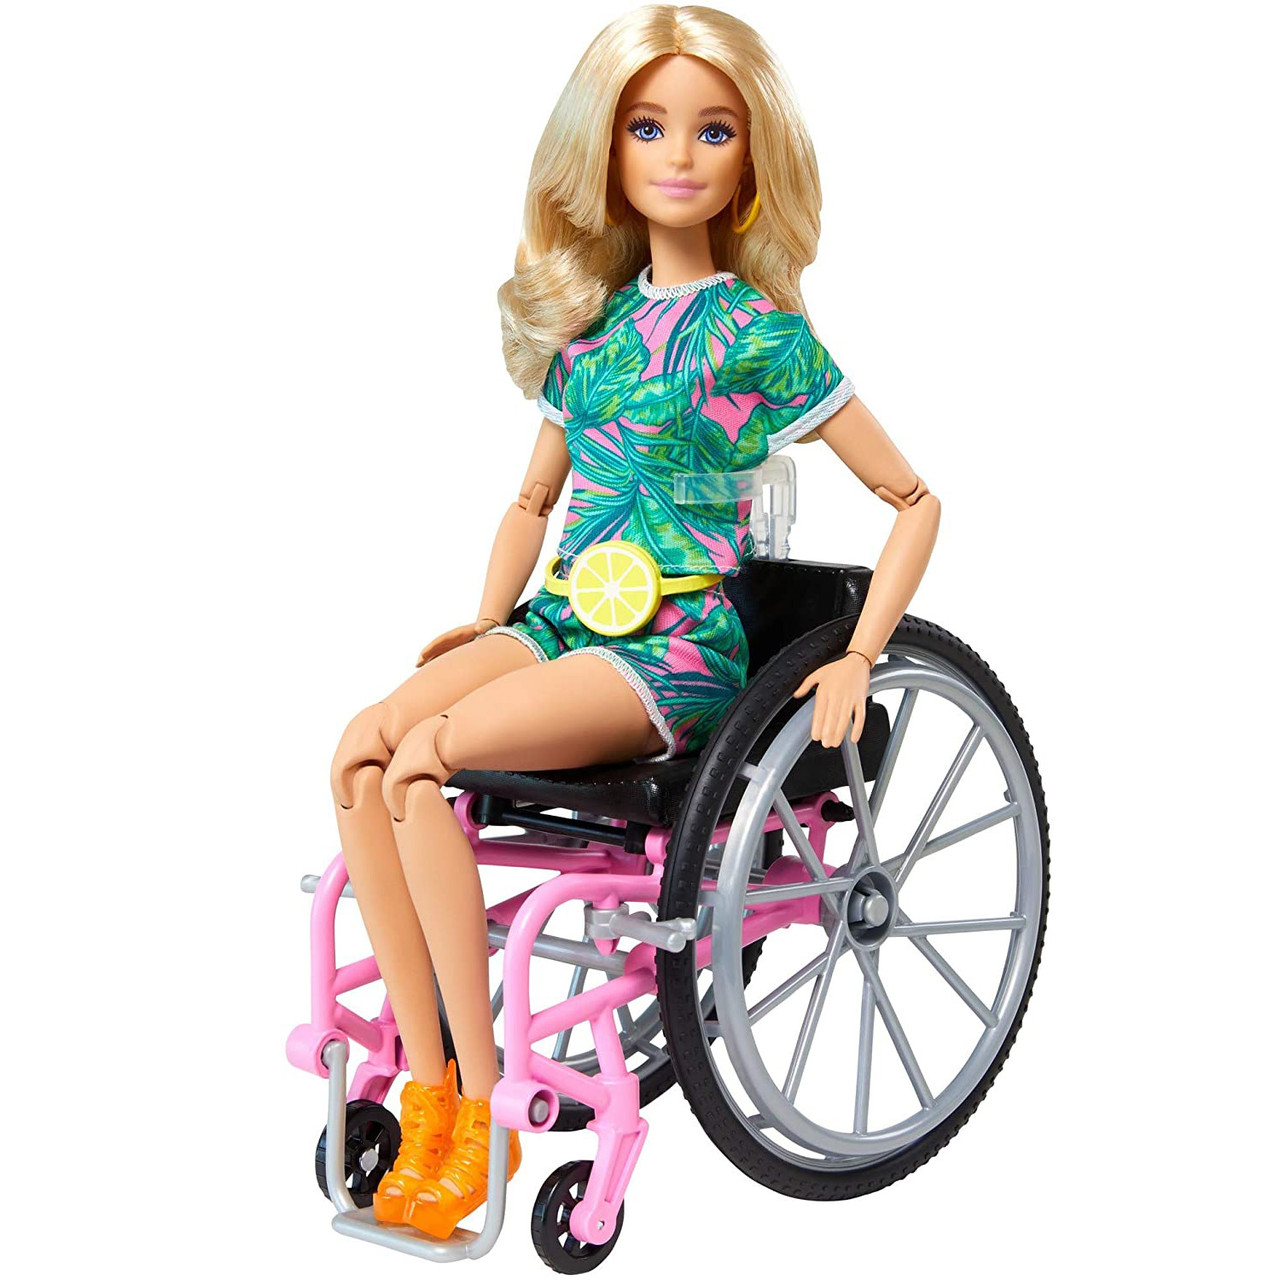 Кукла Барби шарнирная в кресле коляске Блондинка Barbie GRB93